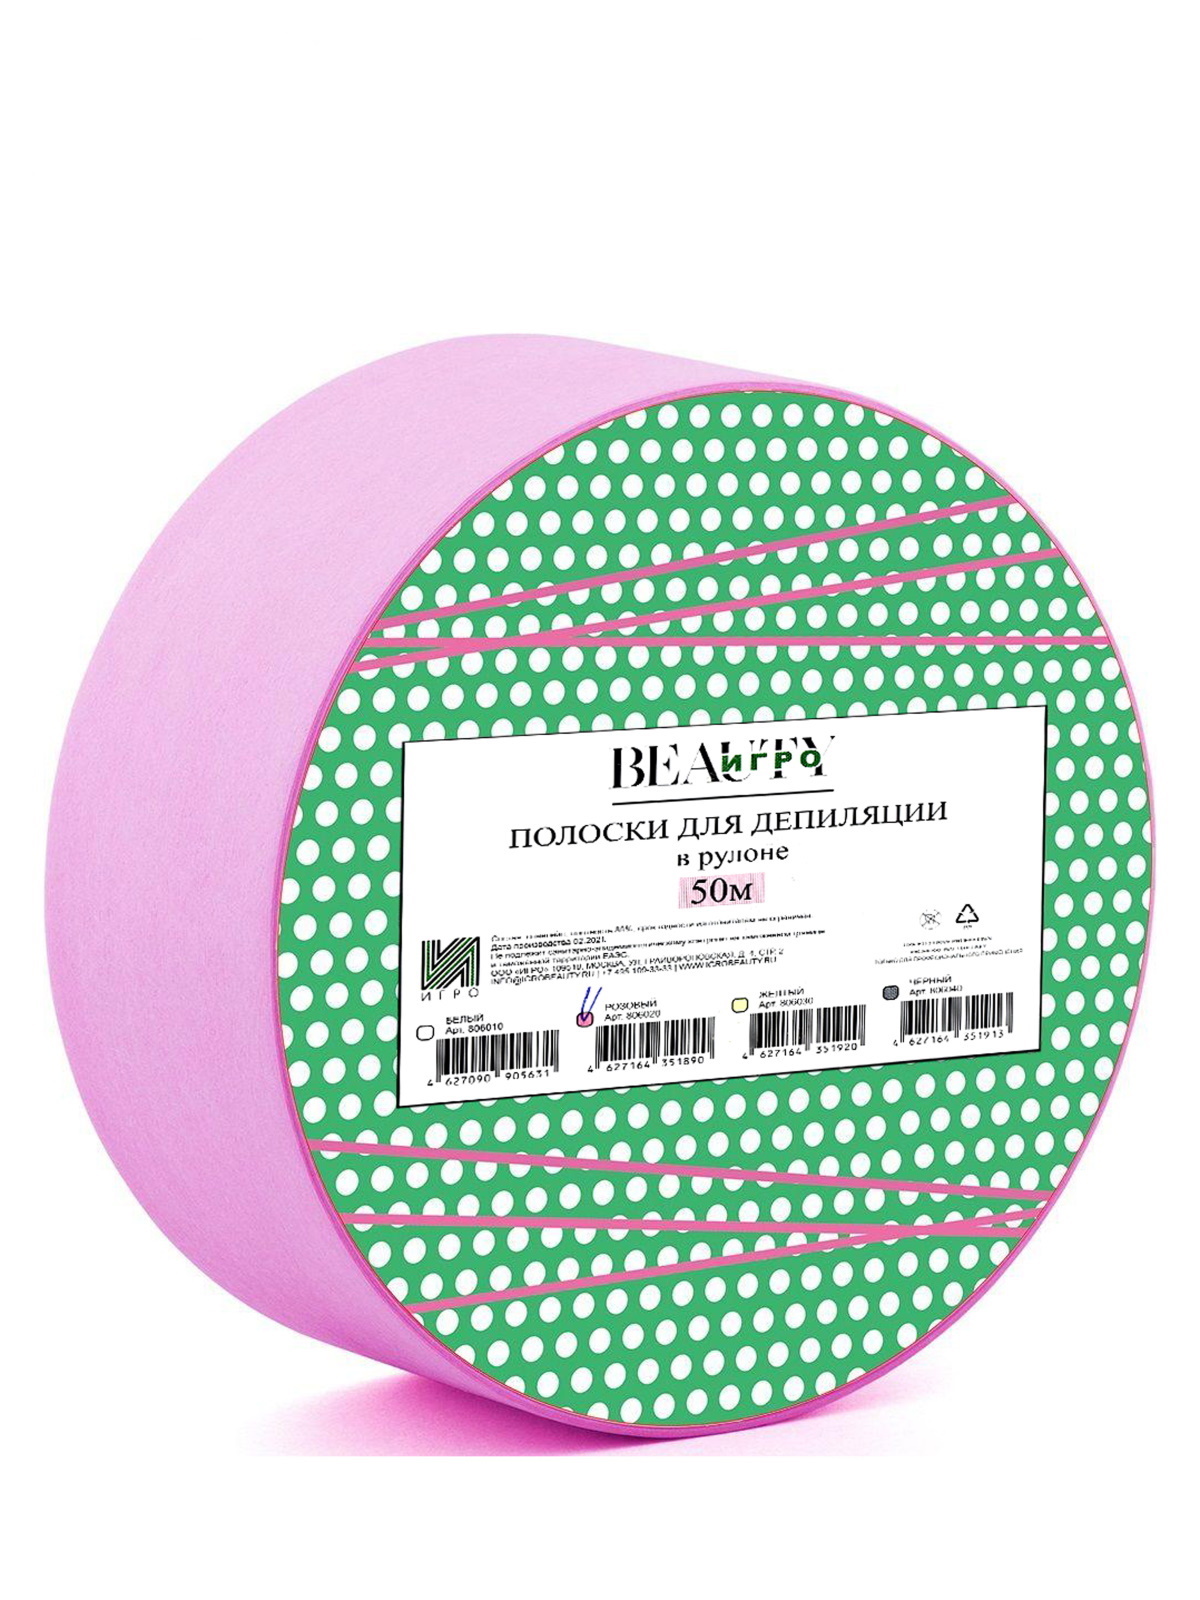 Полоски для депиляции Igrobeauty в рулоне розовые 50 м бумага для депиляции в рулоне флизелин 603 525 3 розовый 1 шт